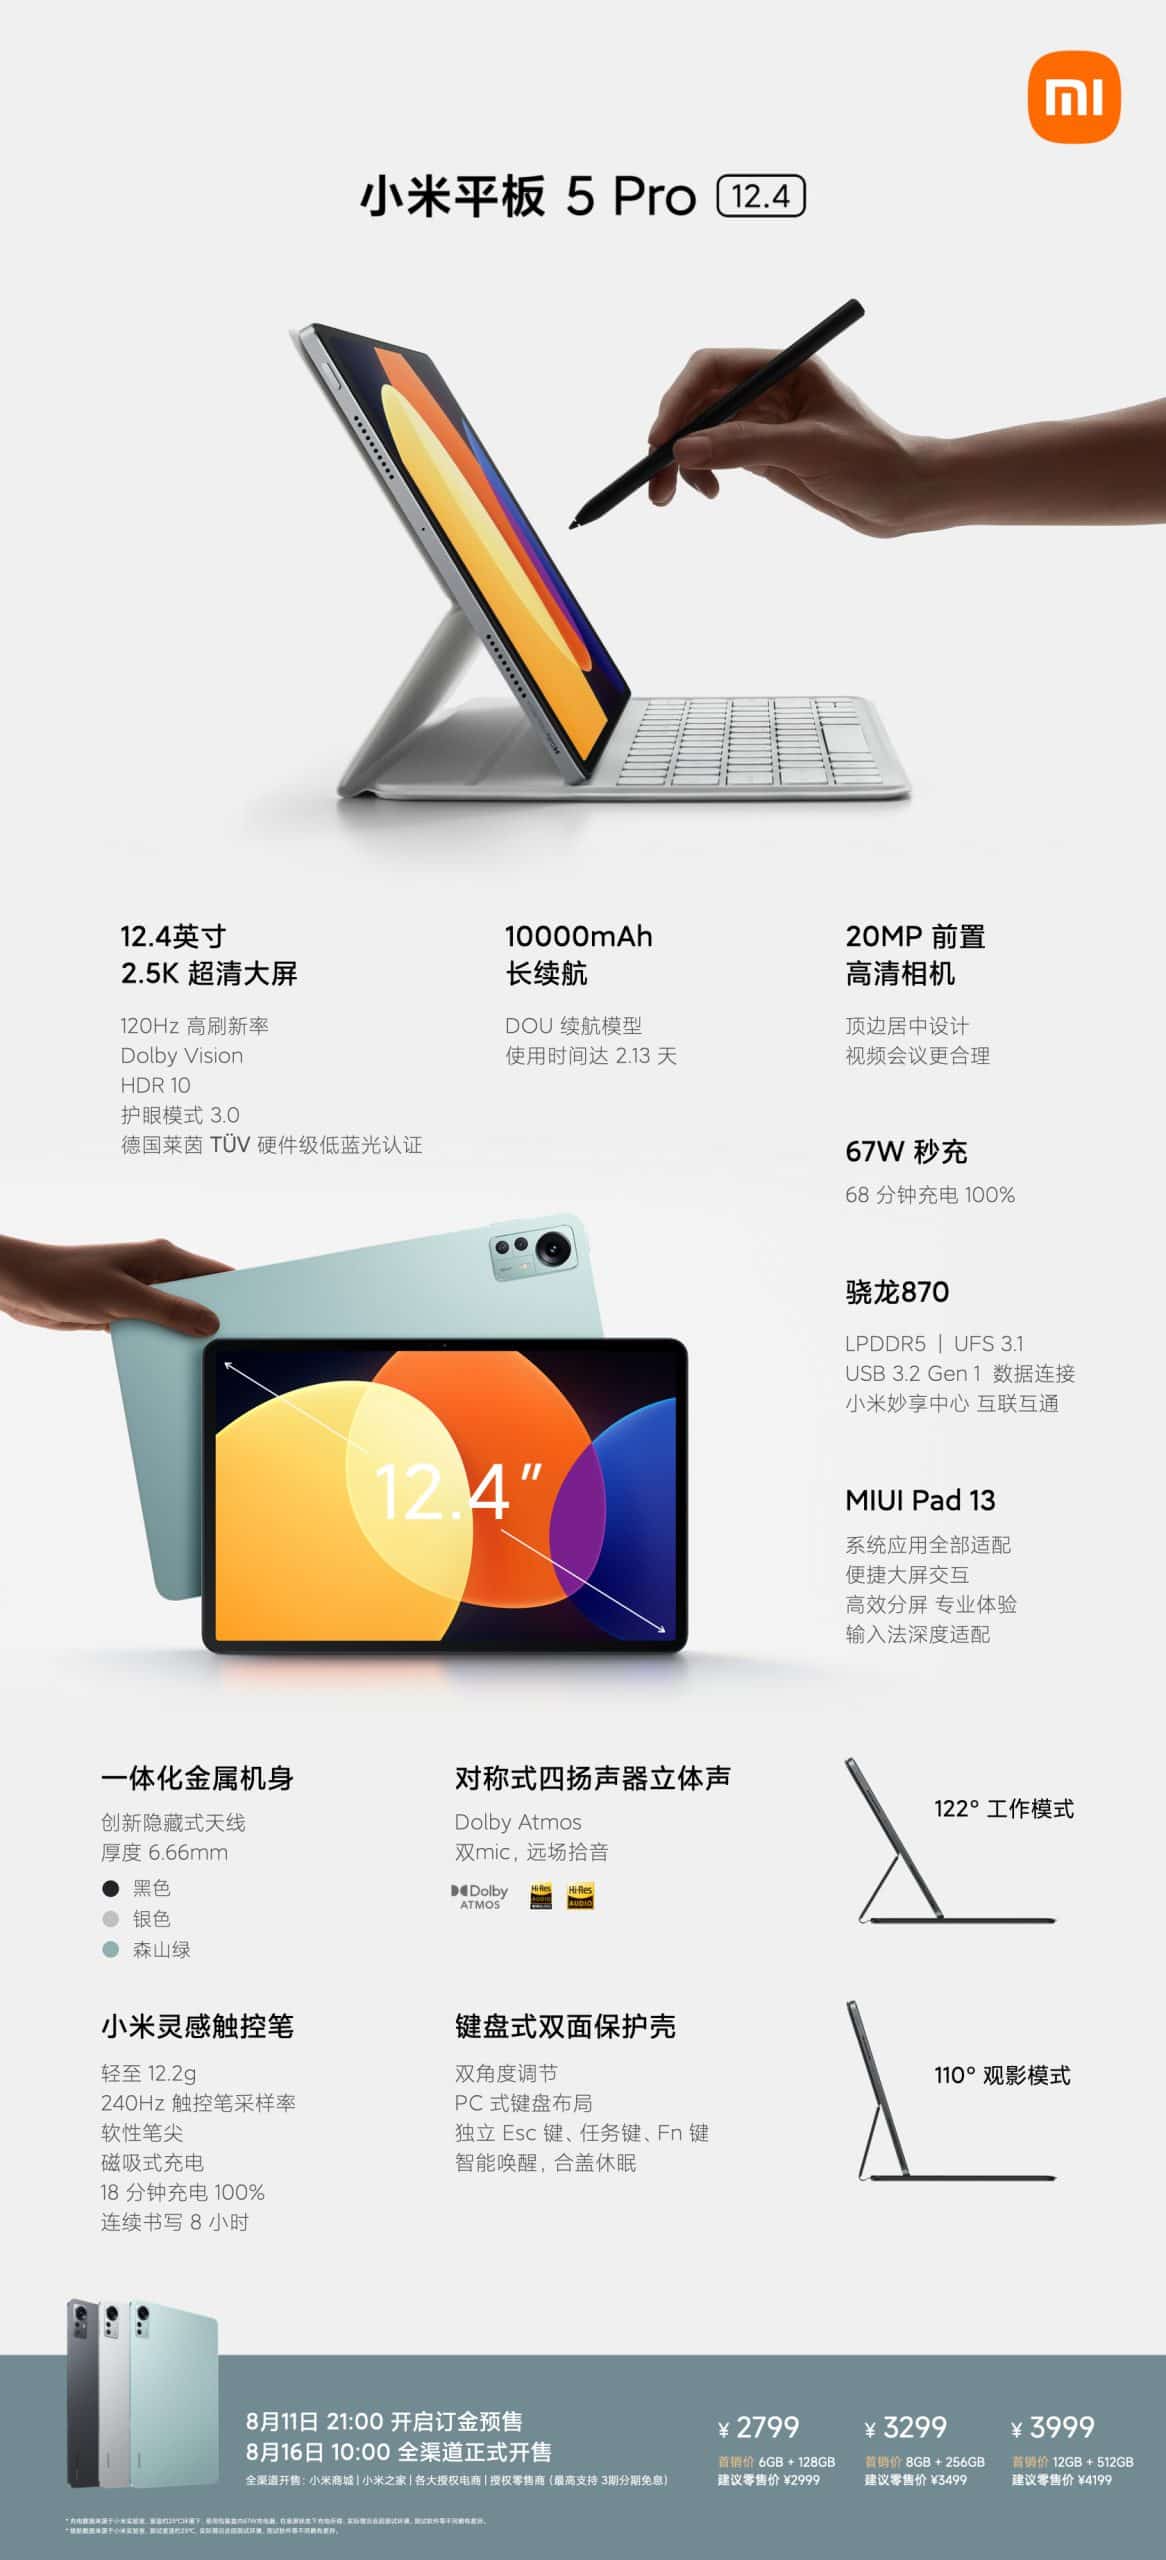 Xiaomi Mi Pad 5 Pro 12.4 specs